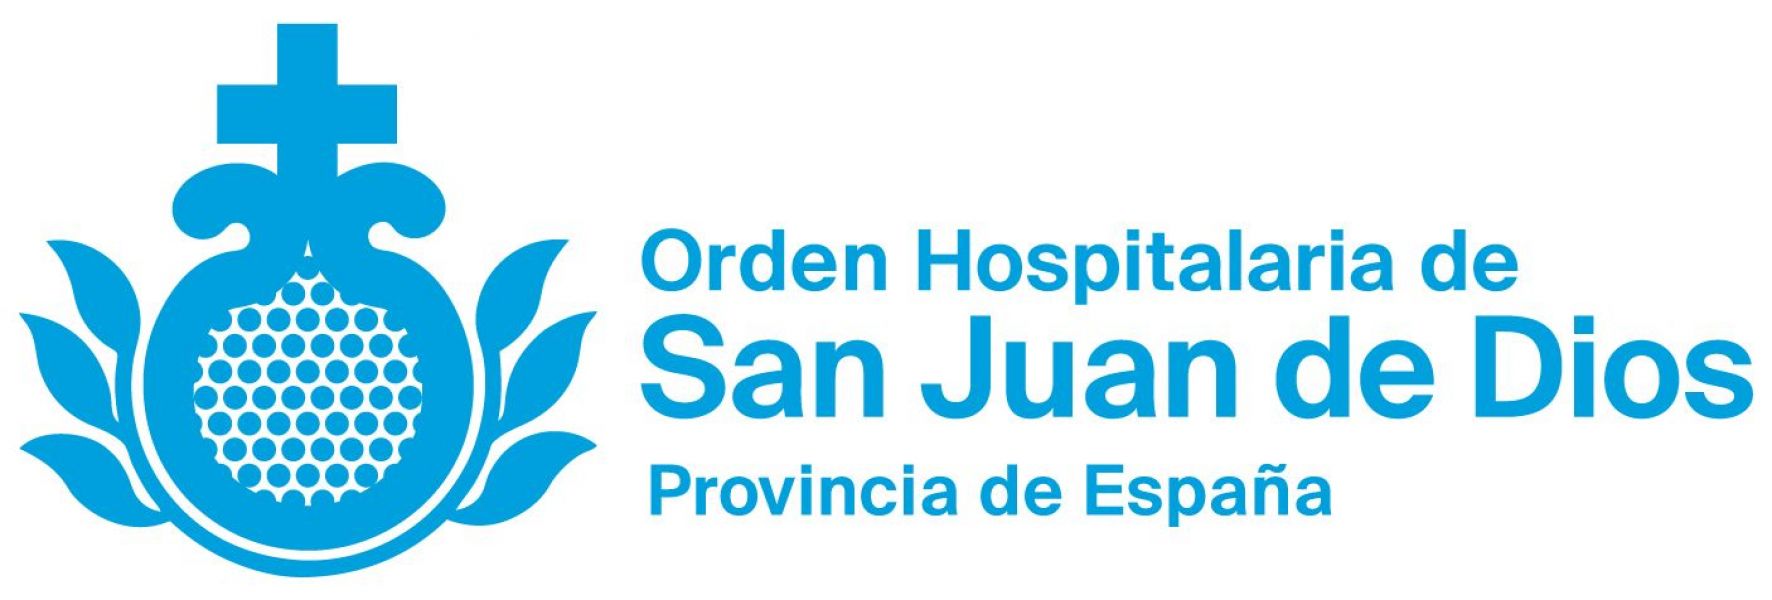 Logotipo de la asociación San Juan de Dios